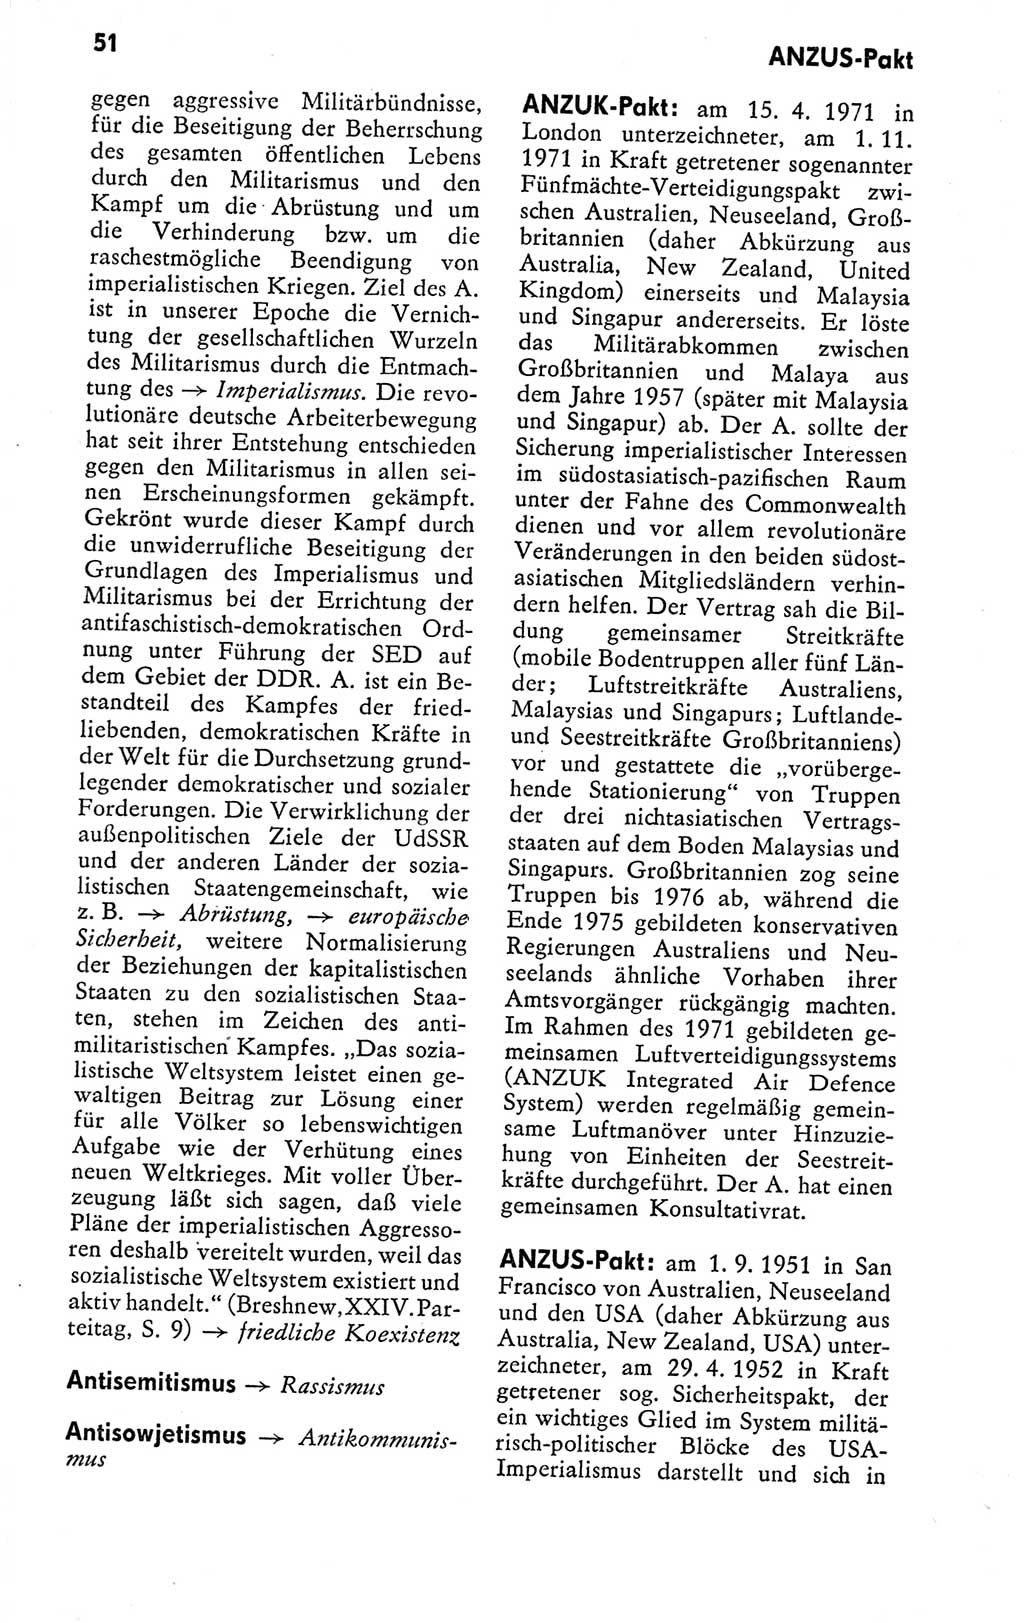 Kleines politisches Wörterbuch [Deutsche Demokratische Republik (DDR)] 1978, Seite 51 (Kl. pol. Wb. DDR 1978, S. 51)